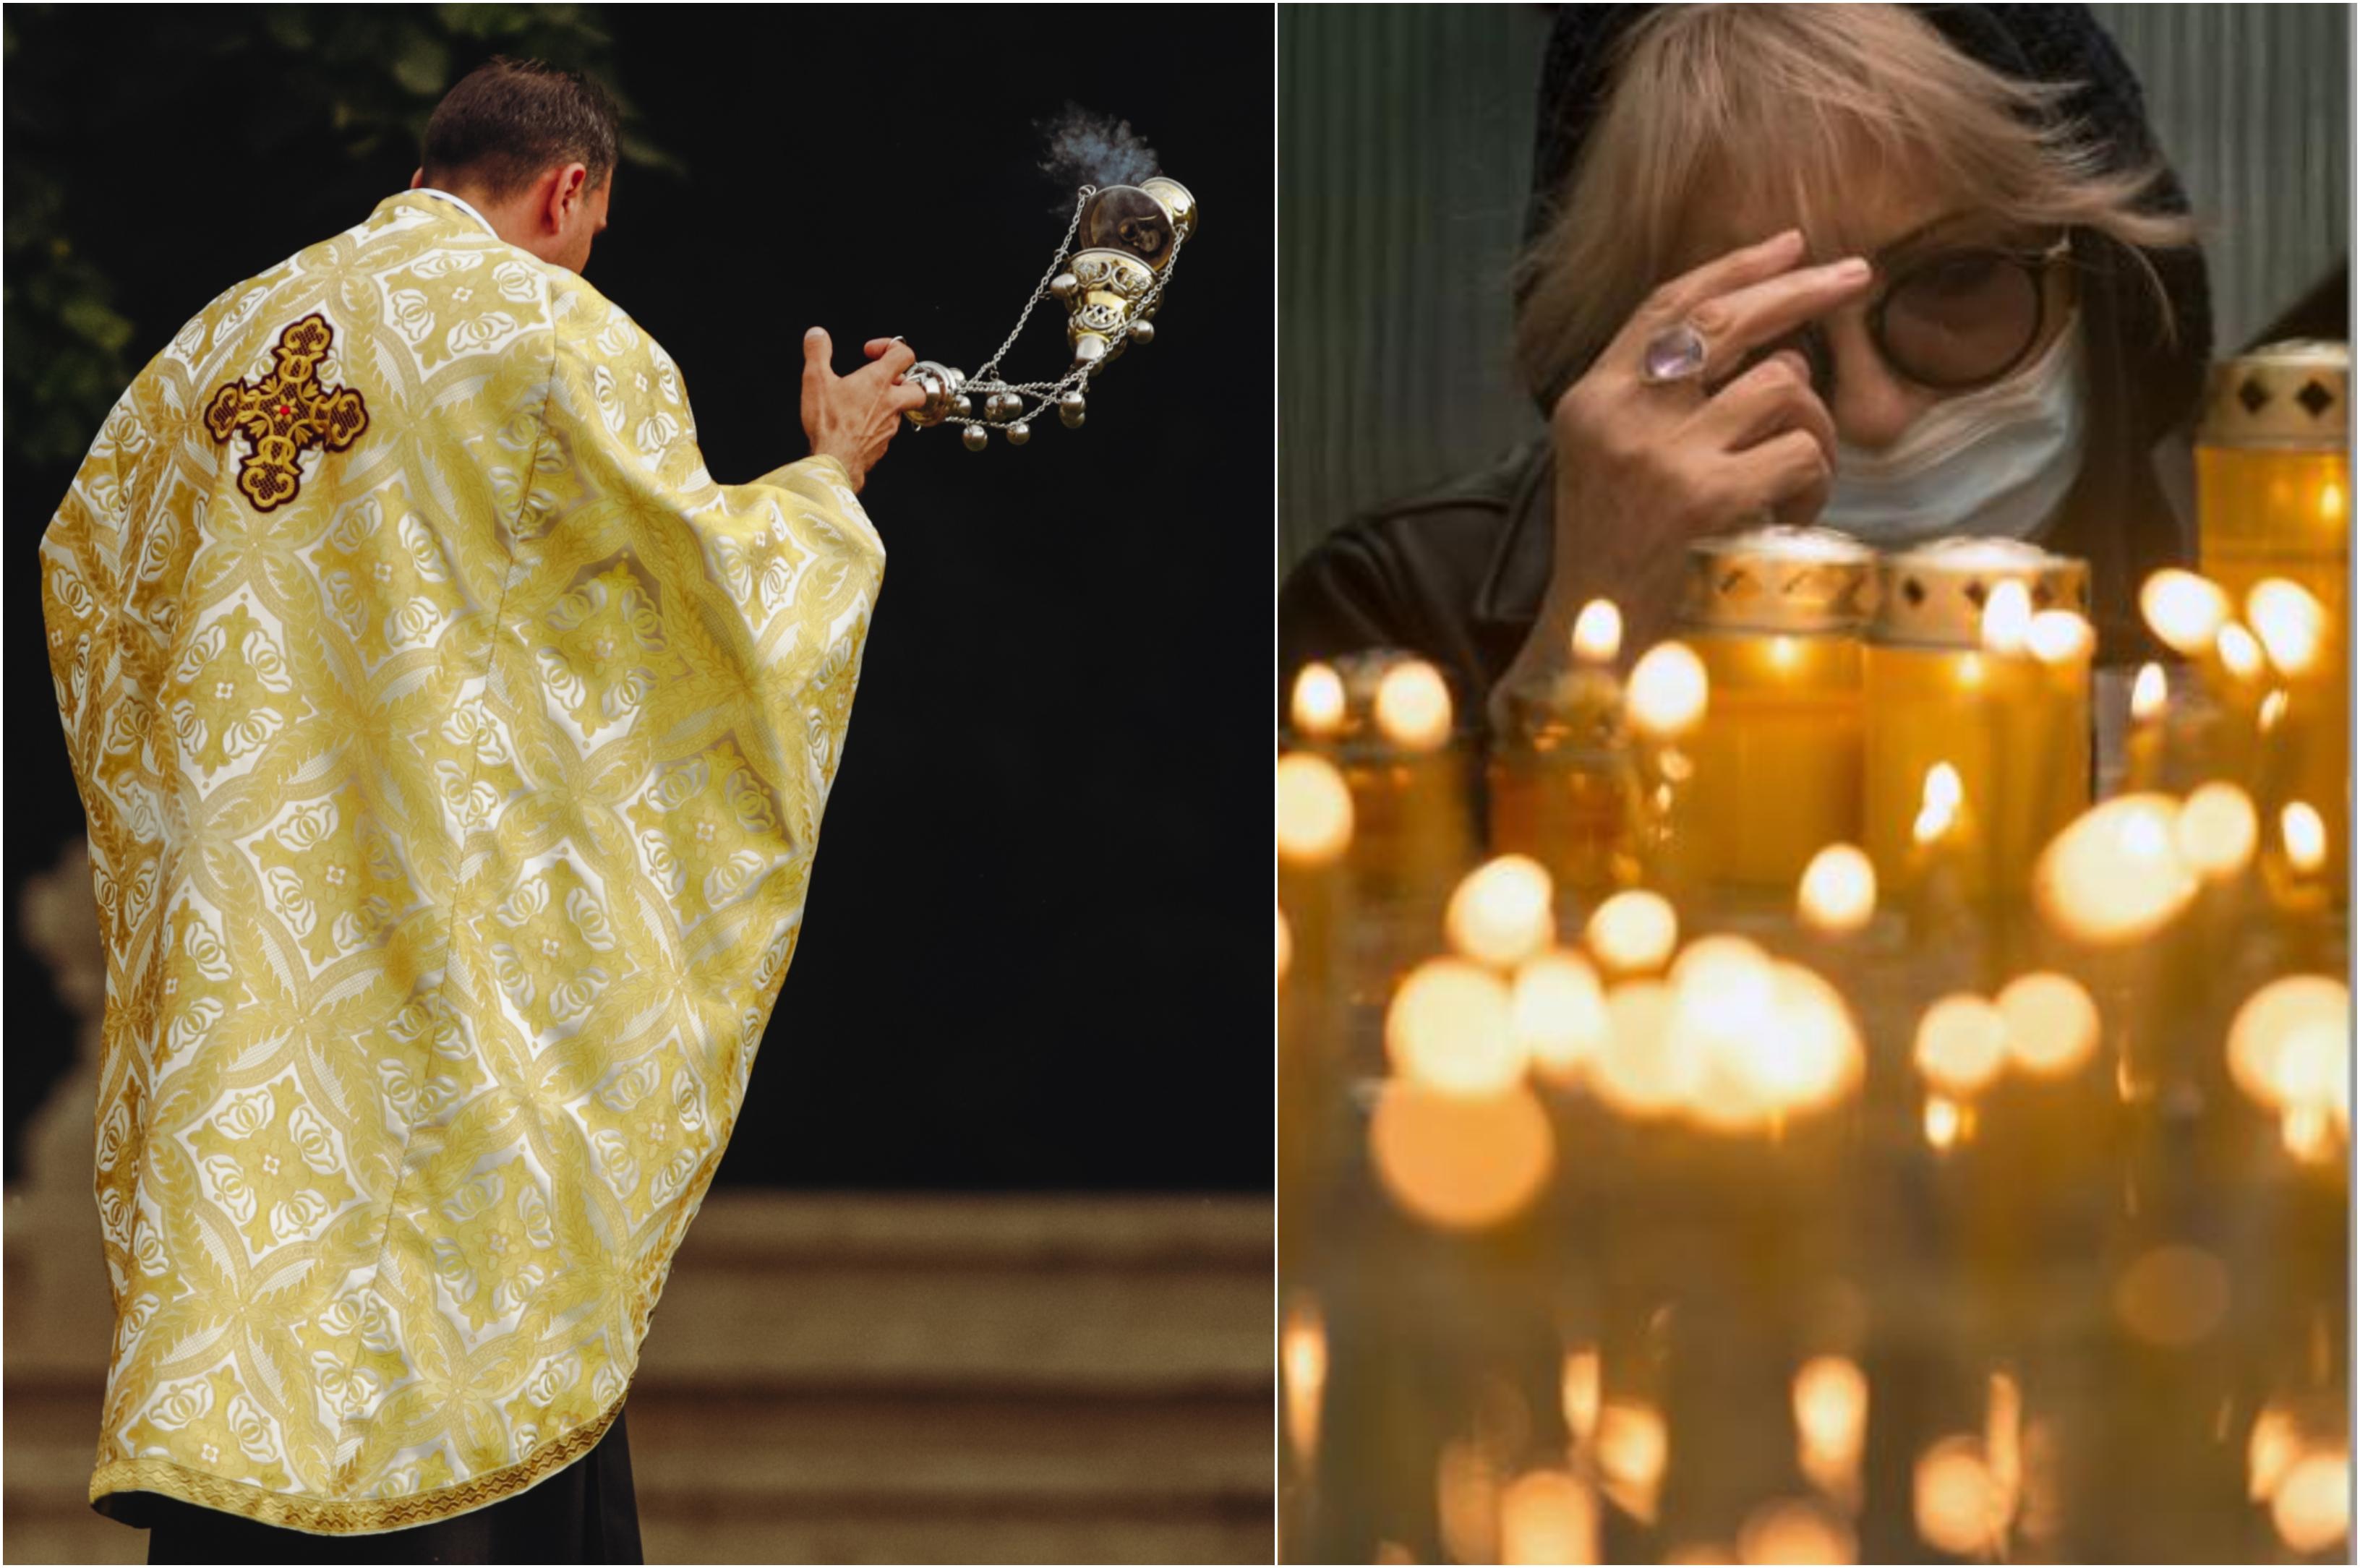 colaj de fotografii cu un preot care tămâiază și o femeie care își face cruce, înconjurată fiind de lumanari aprinse